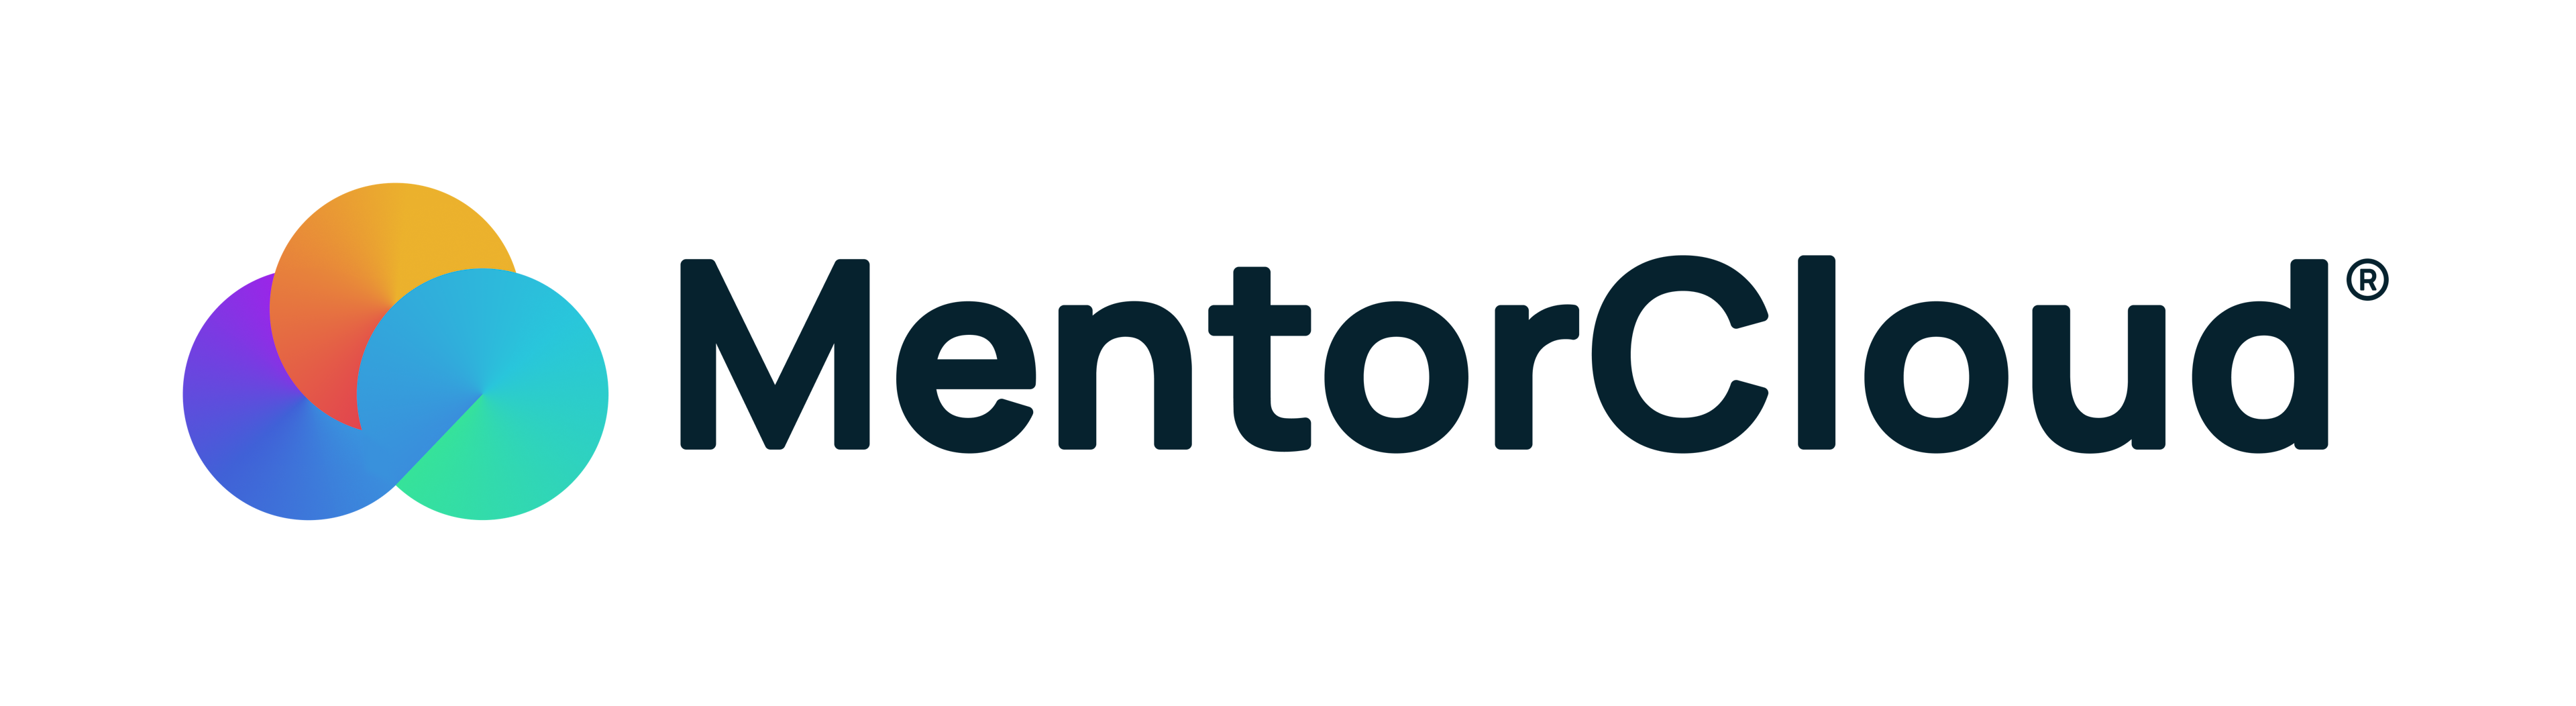 MentorCloud Logo